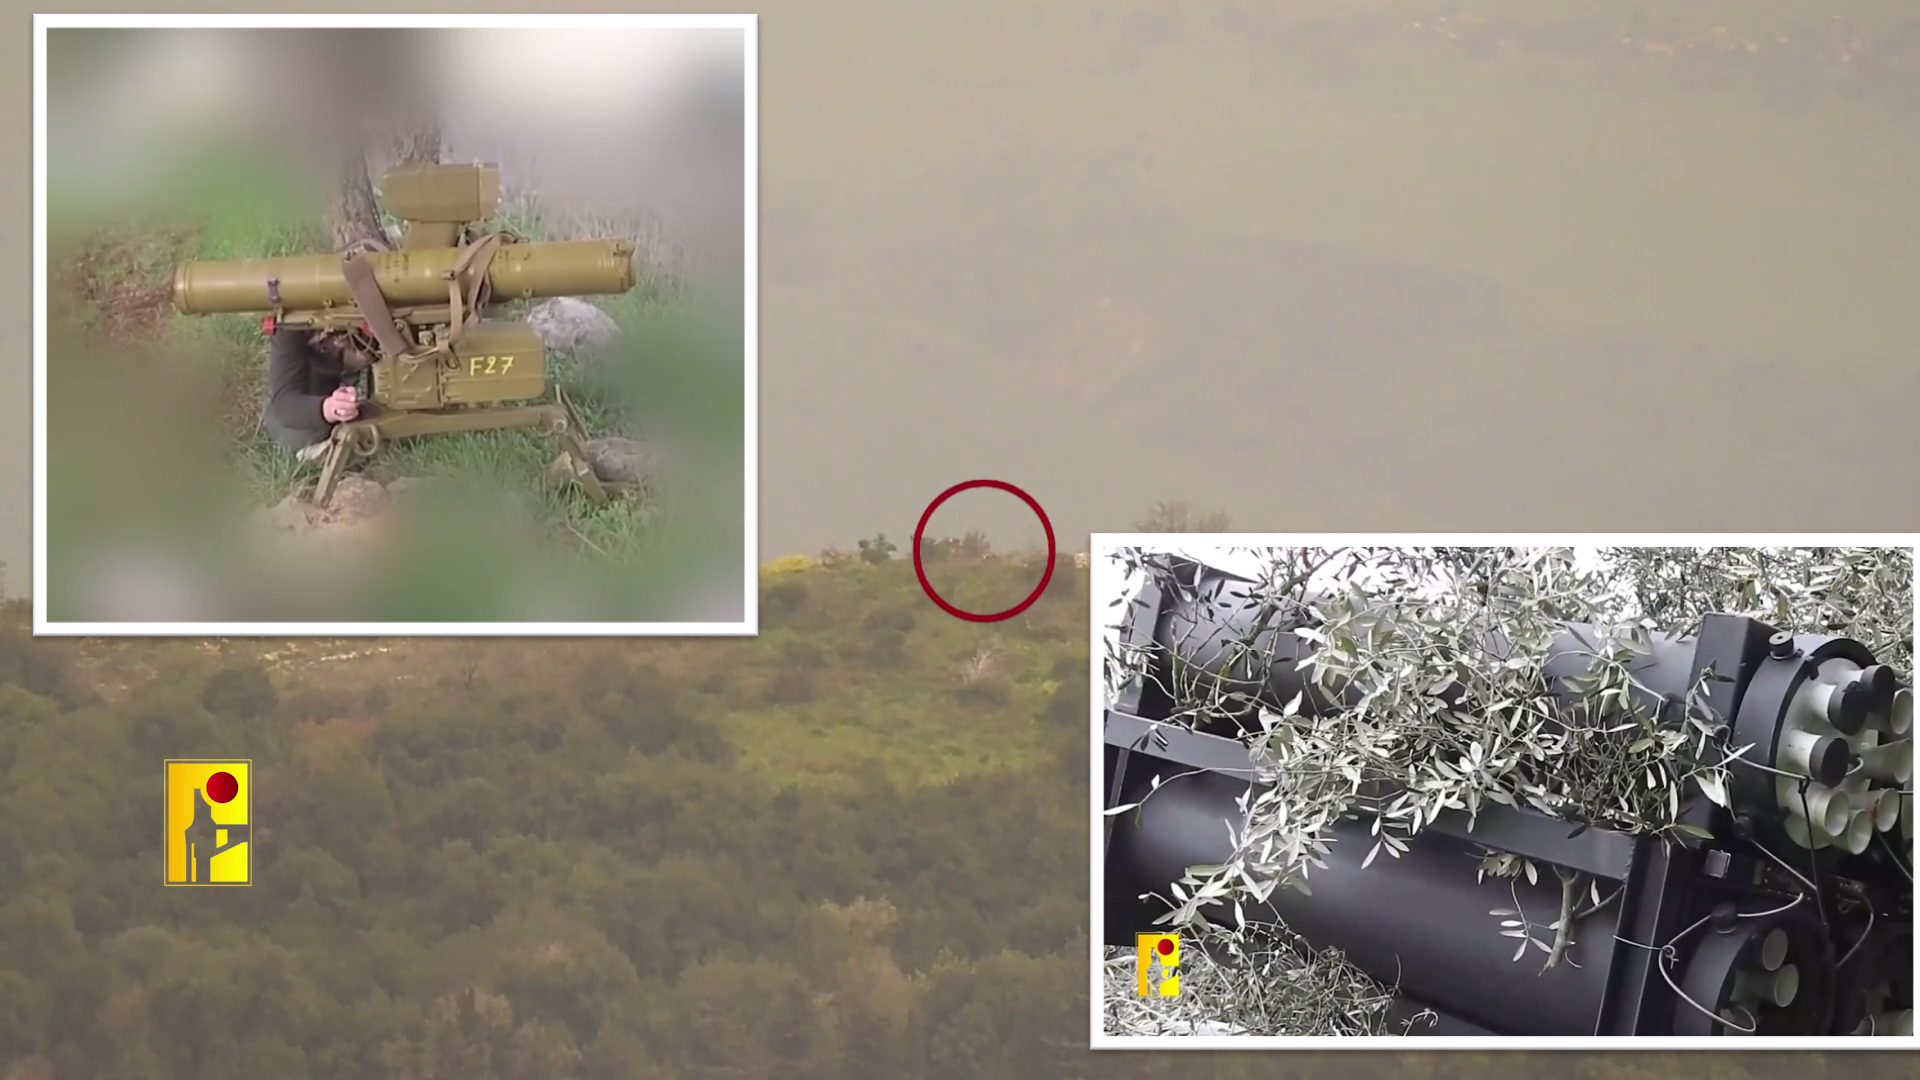 بالفيديو.. صواريخ "حزب الله" اللبناني تضرب قوة عسكرية إسرائيلية ومستوطنة كريات شمونة